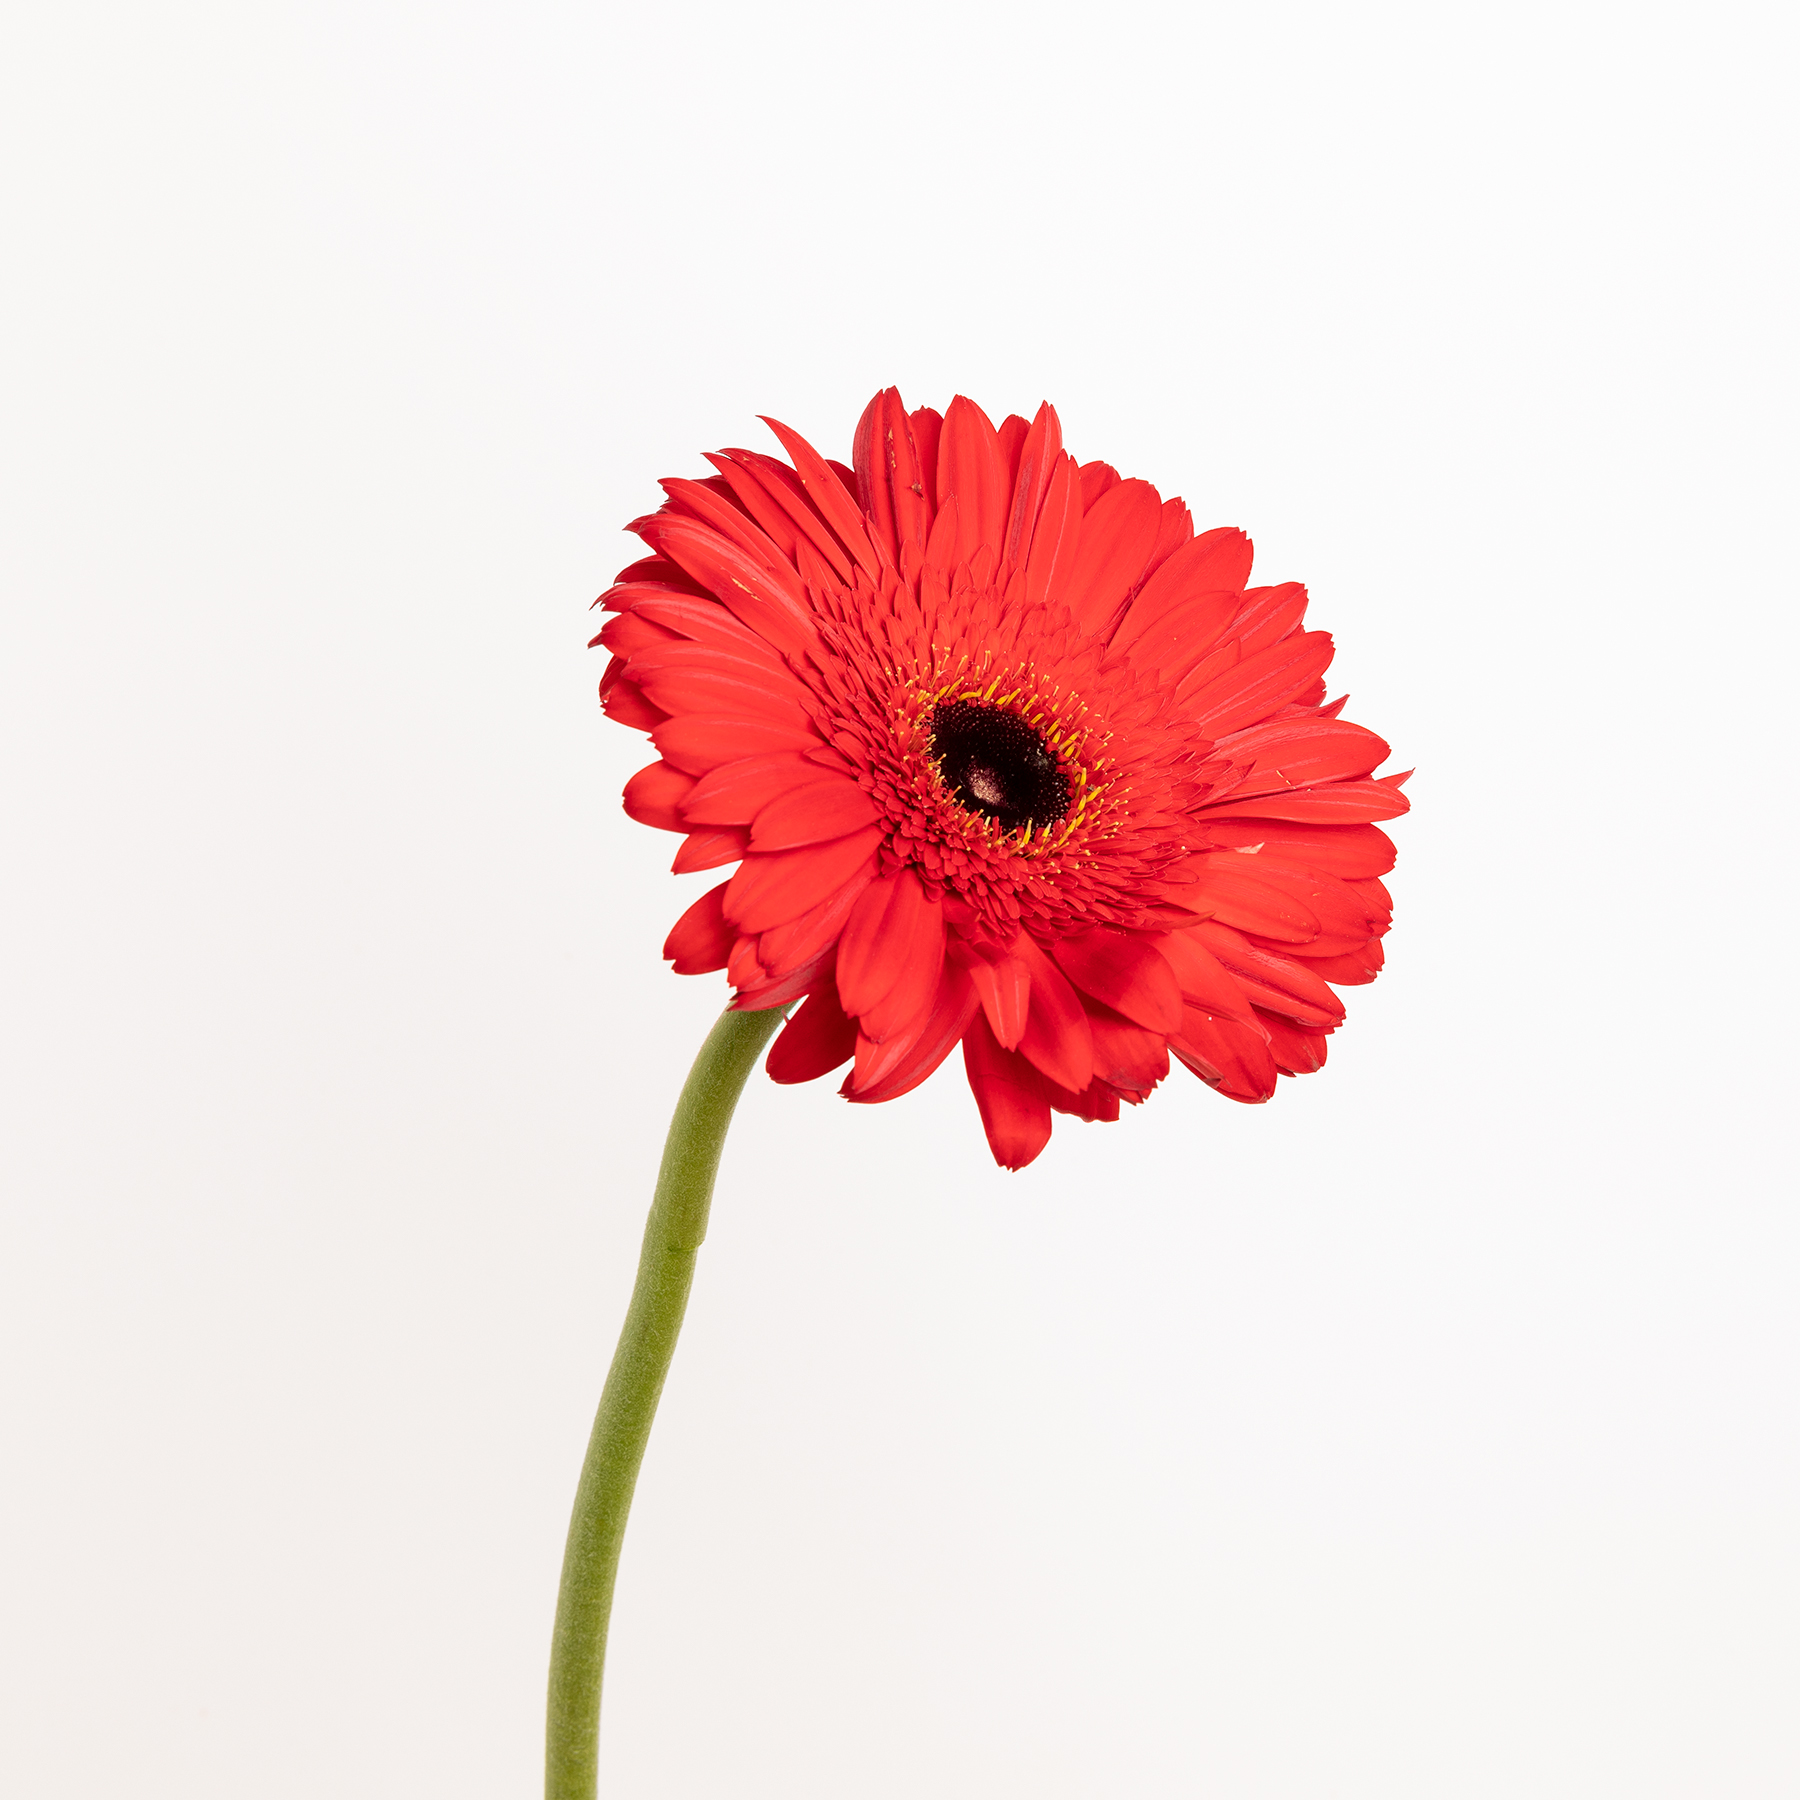 El encanto de la Gerbera, la flor decorativa por excelencia - Colvin